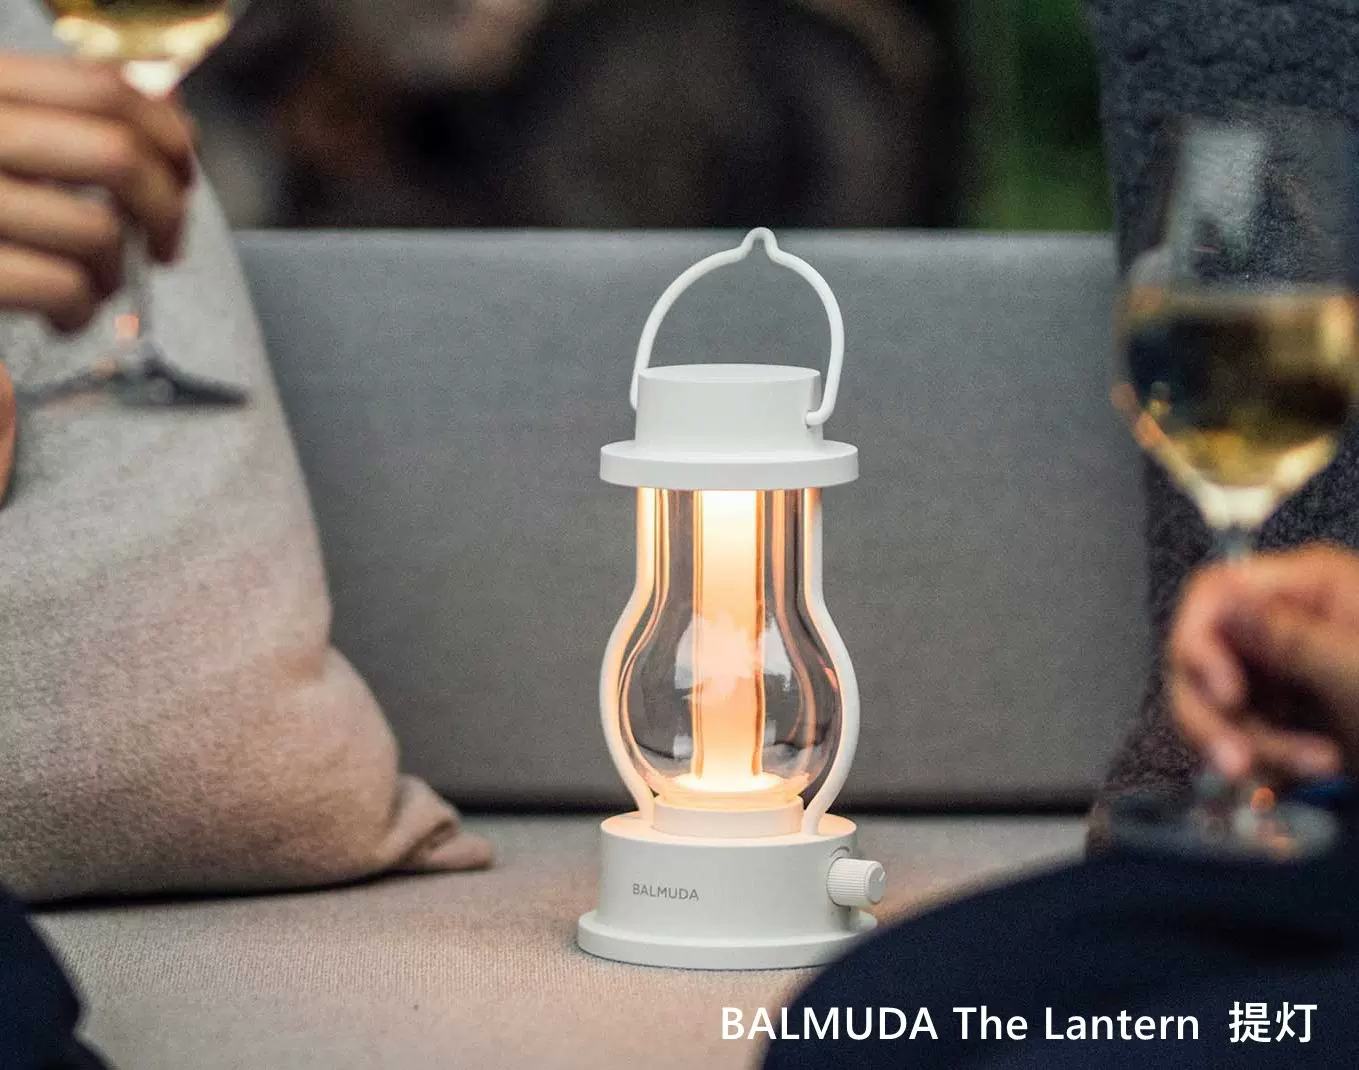 日本直购BALMUDA The Lantern家用户外露营灯LED手提照明装饰灯-Taobao